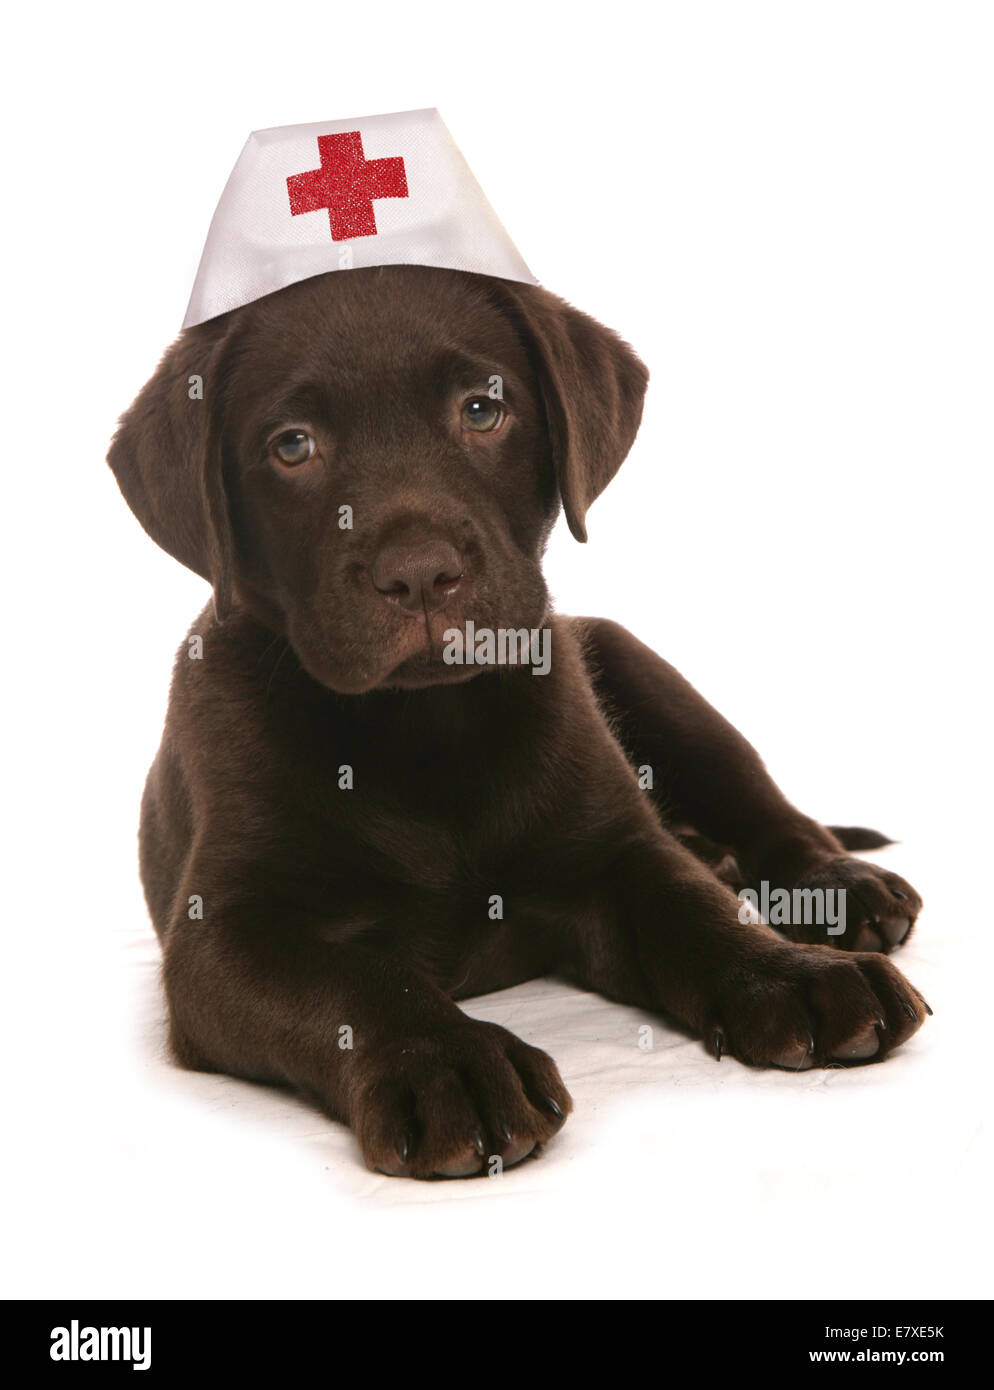 Labrador retiever wearing nurses hat Stock Photo